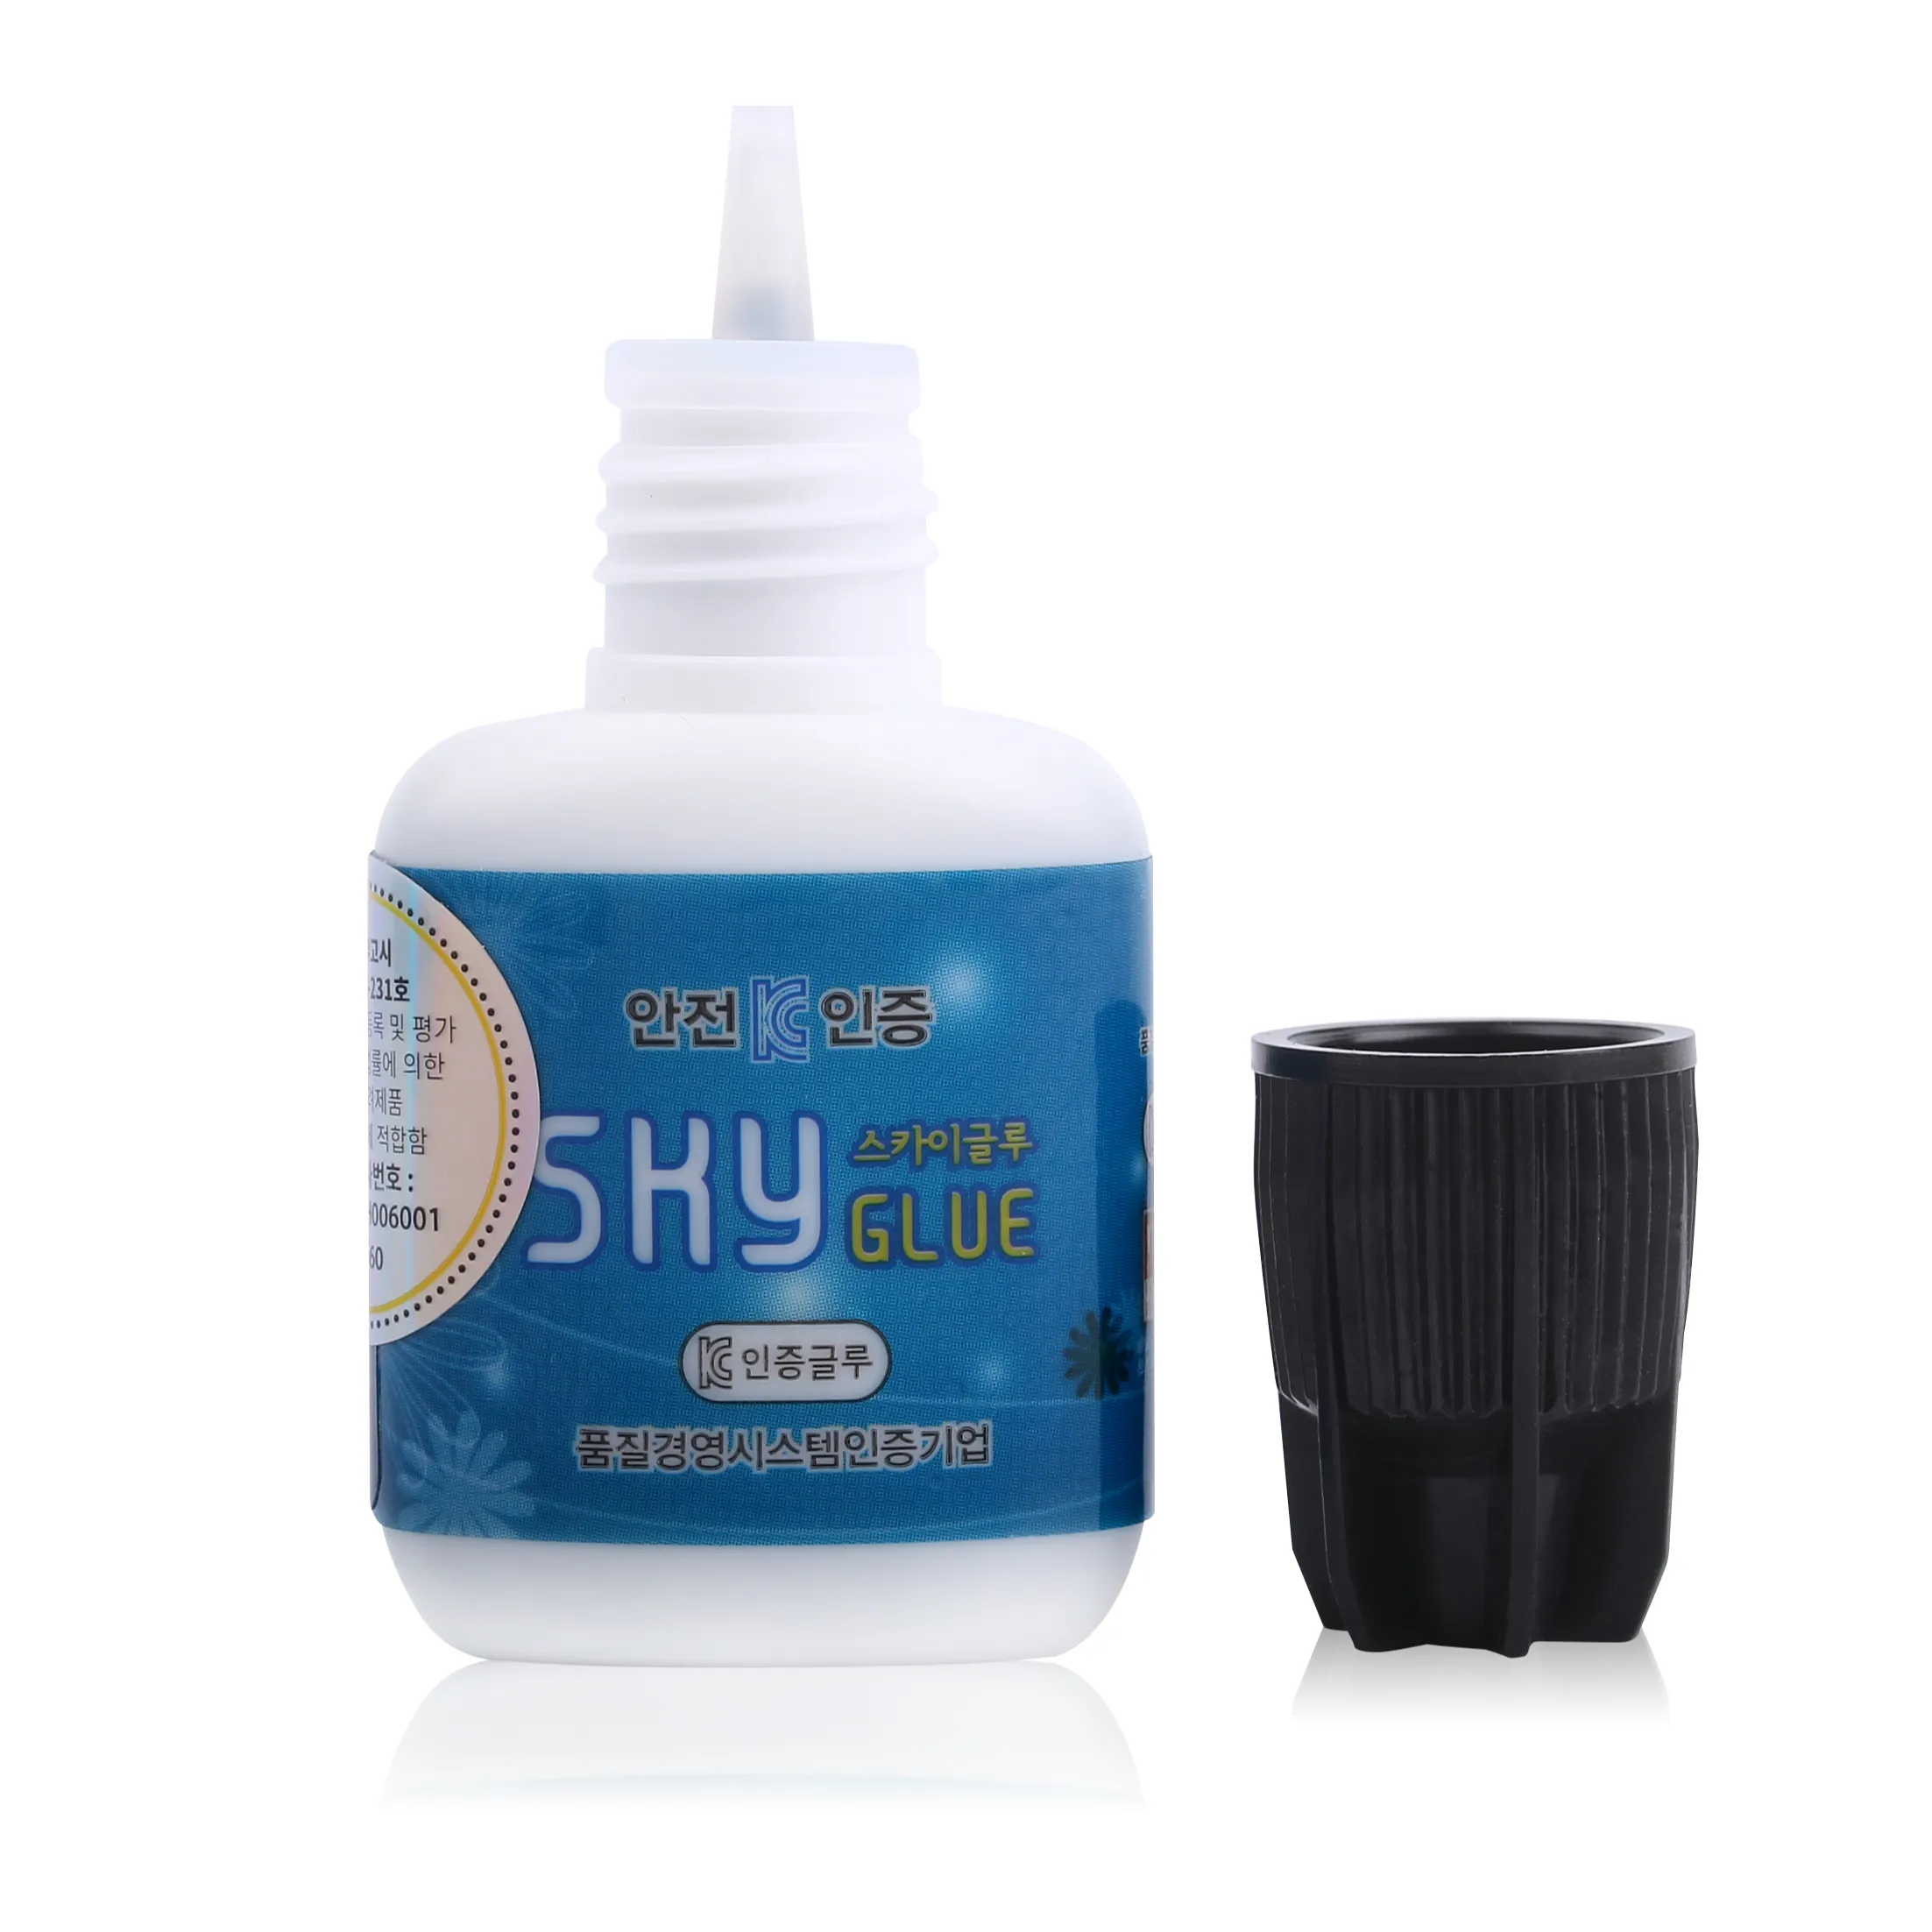 korea ib glue waterproof glue latex free eyelash extensions glue waterproof private label wholesale